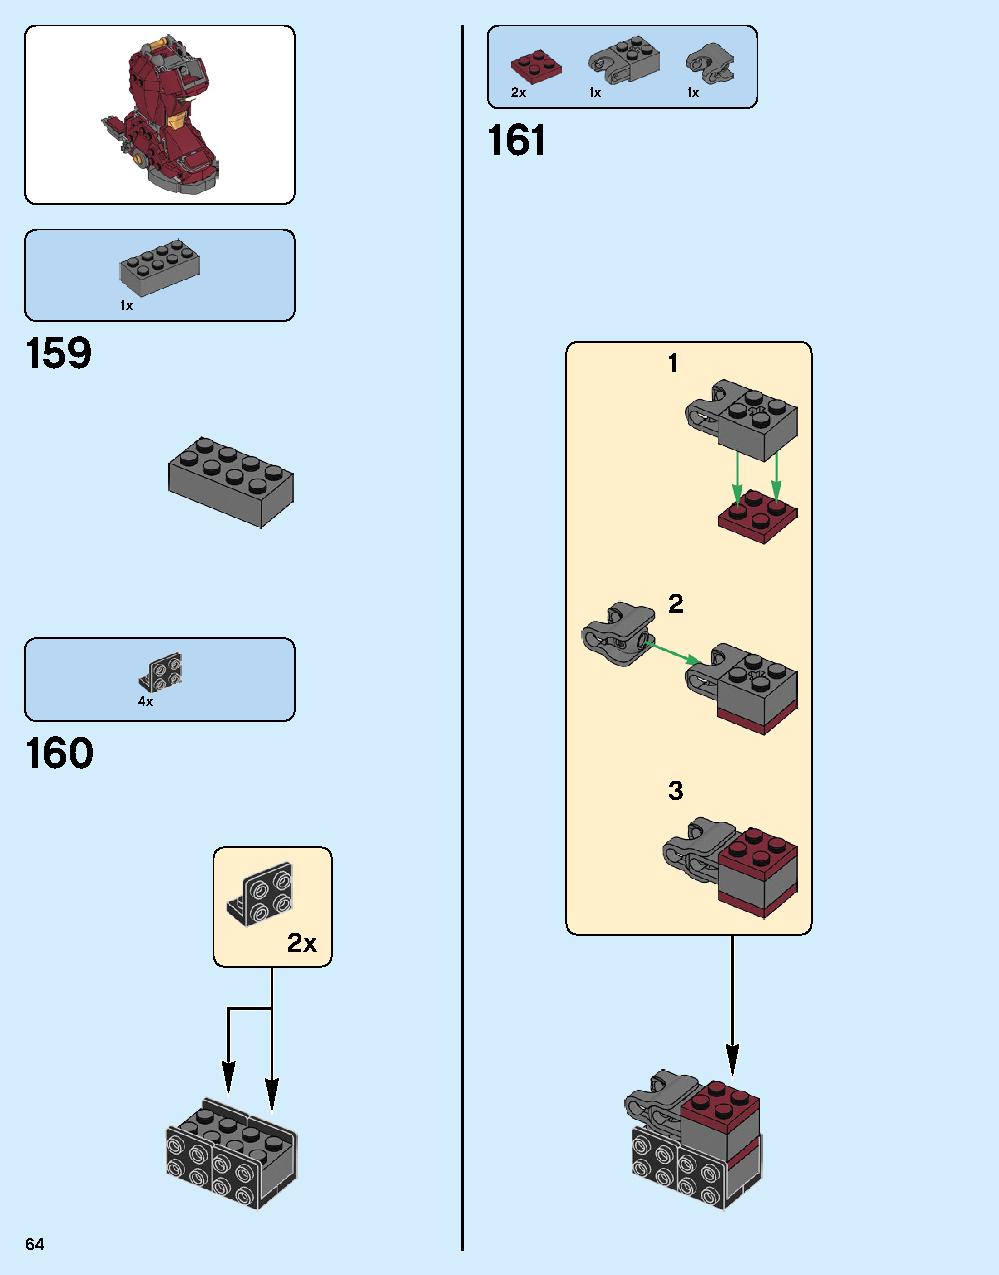 ハルクバスター：ウルトロン・エディション 76105 レゴの商品情報 レゴの説明書・組立方法 64 page